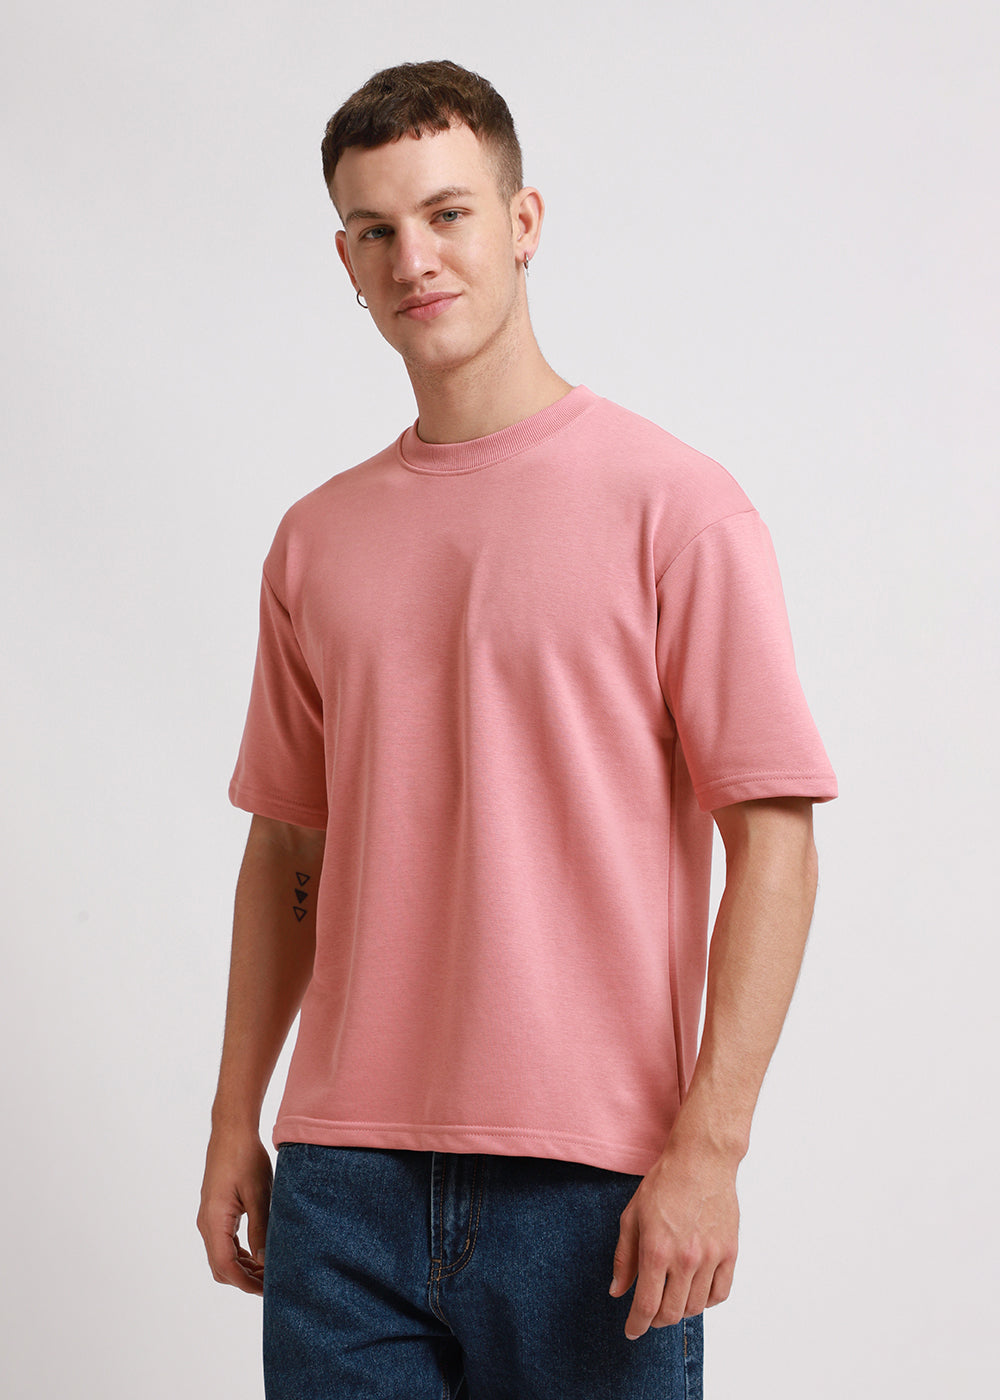 Brio Pink Oversized Basic T-shirt